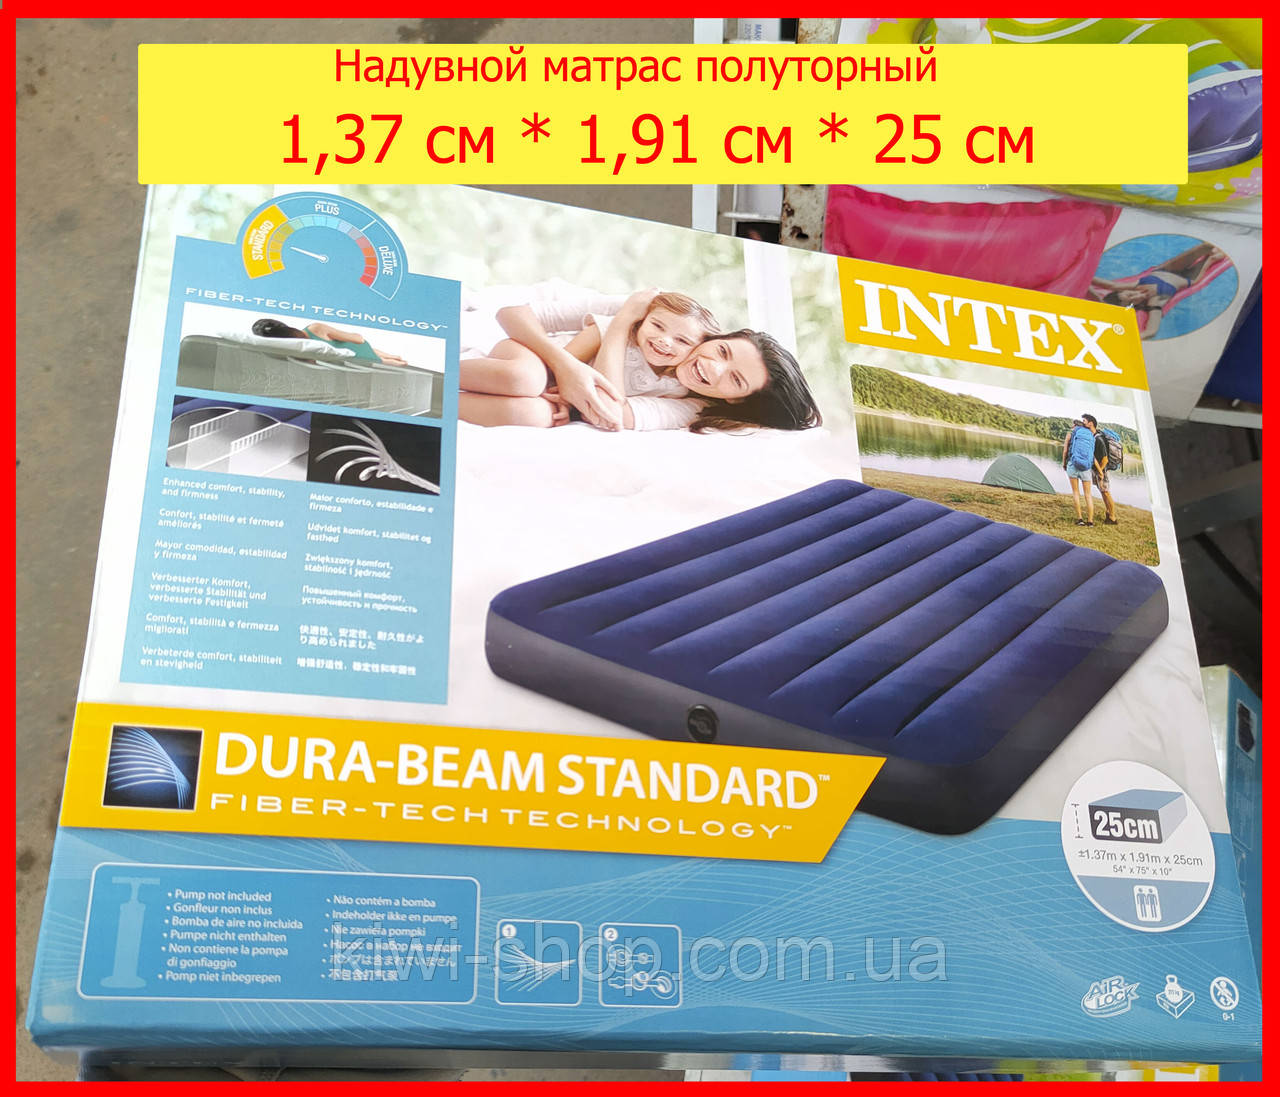 Надувний матрац Intex 64758 синій велюр 137x191x25 см, водний пляжний матрац для сну або плавання полуторний